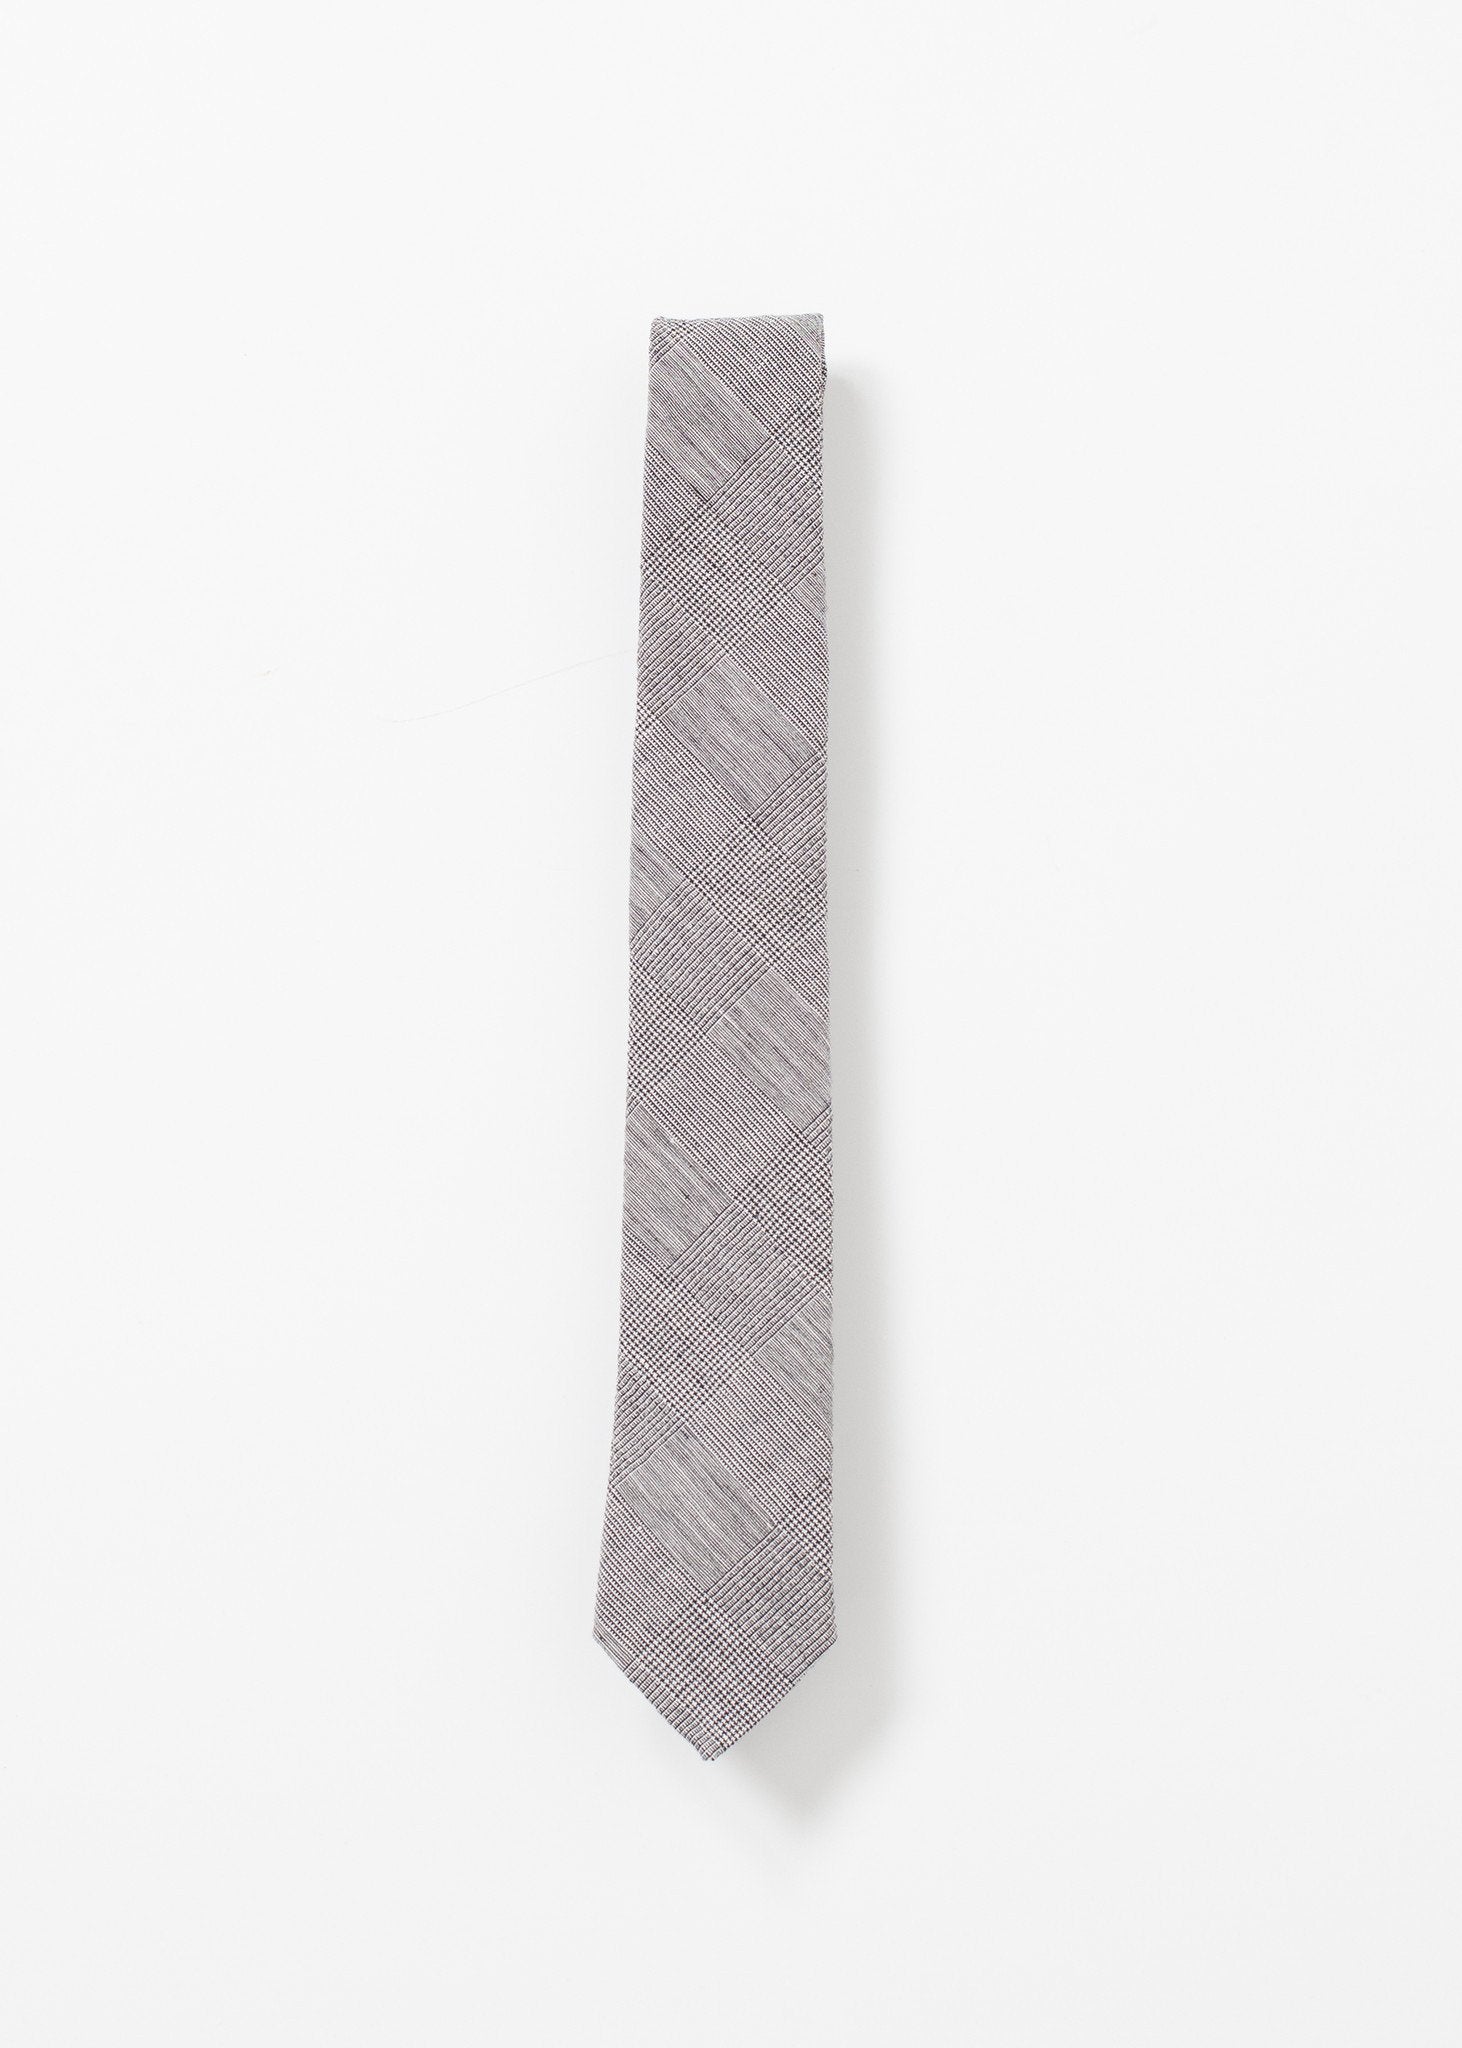 Basic Tie